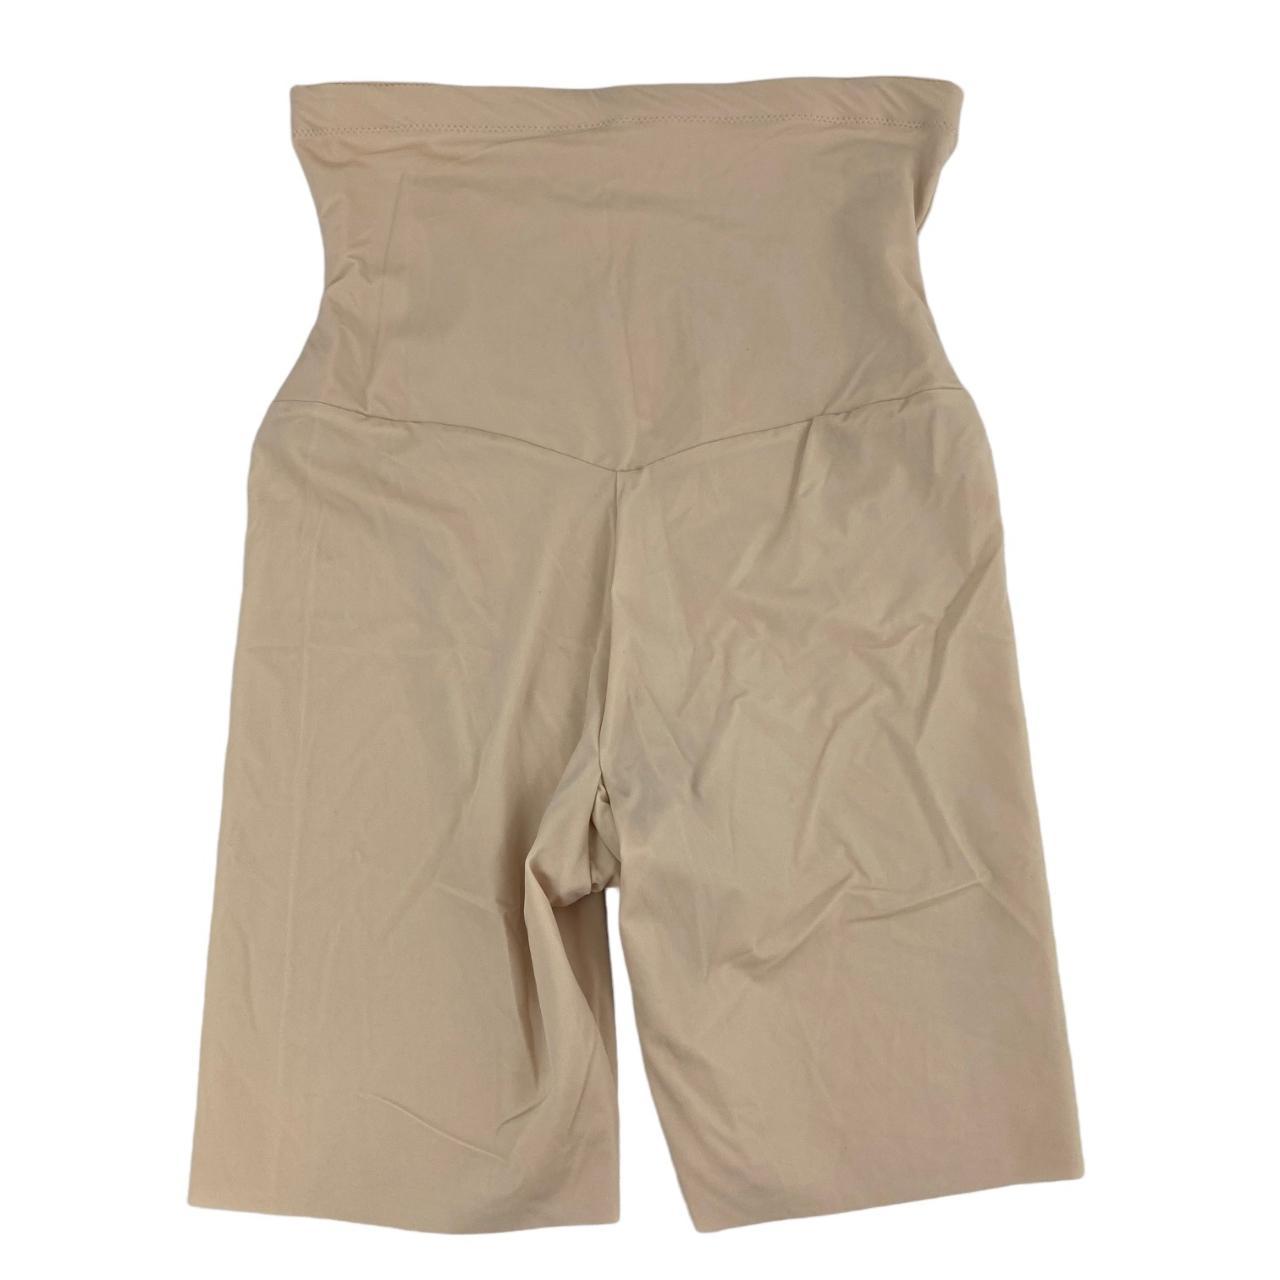 Product Image 2 - Maidenform Nude Shapewear Shaper Shorts